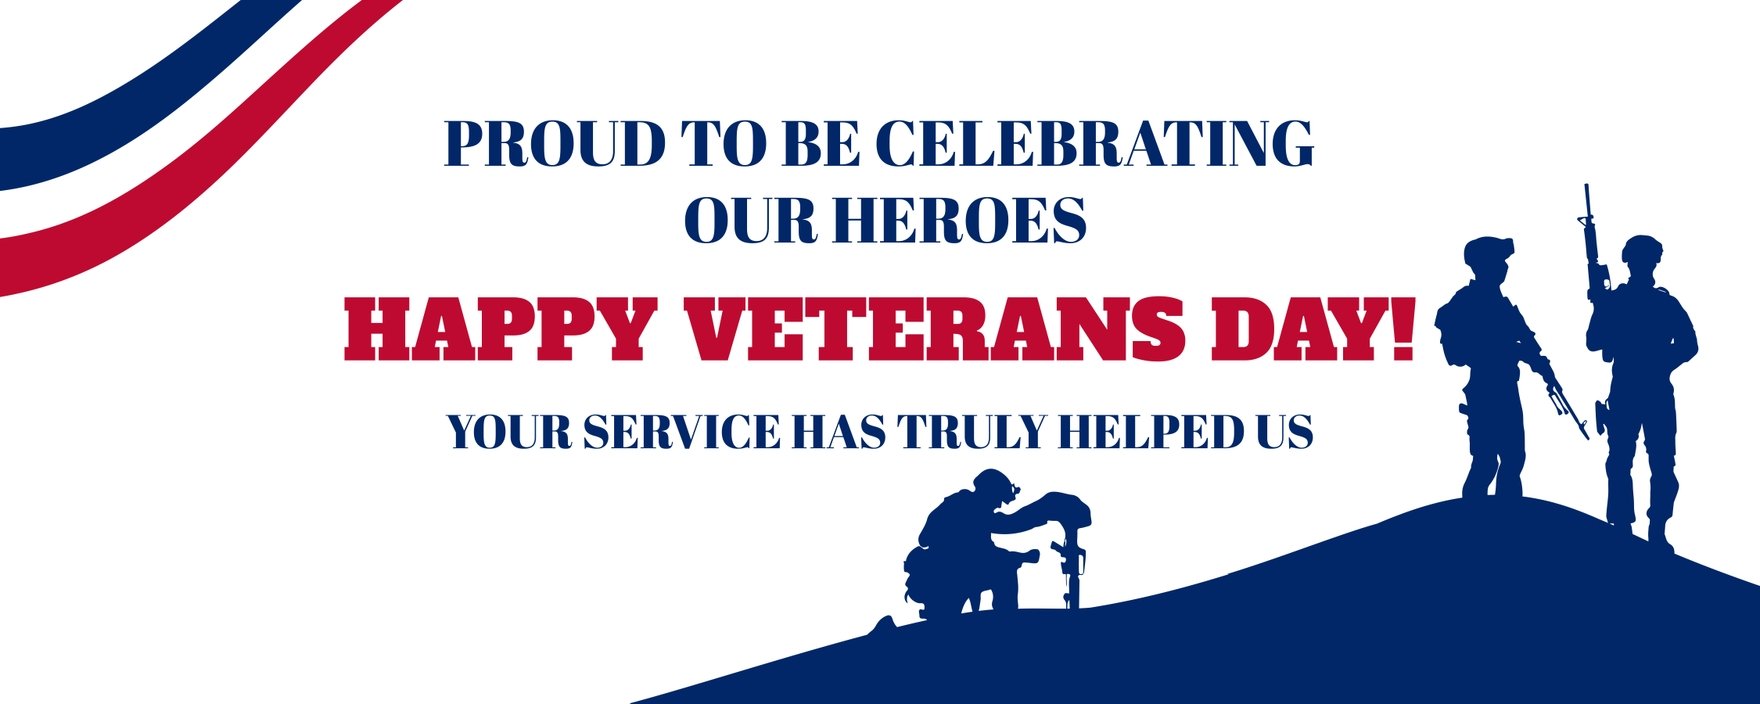 Veterans Day Flex Banner in Illustrator, PSD, EPS, SVG, JPG, PNG